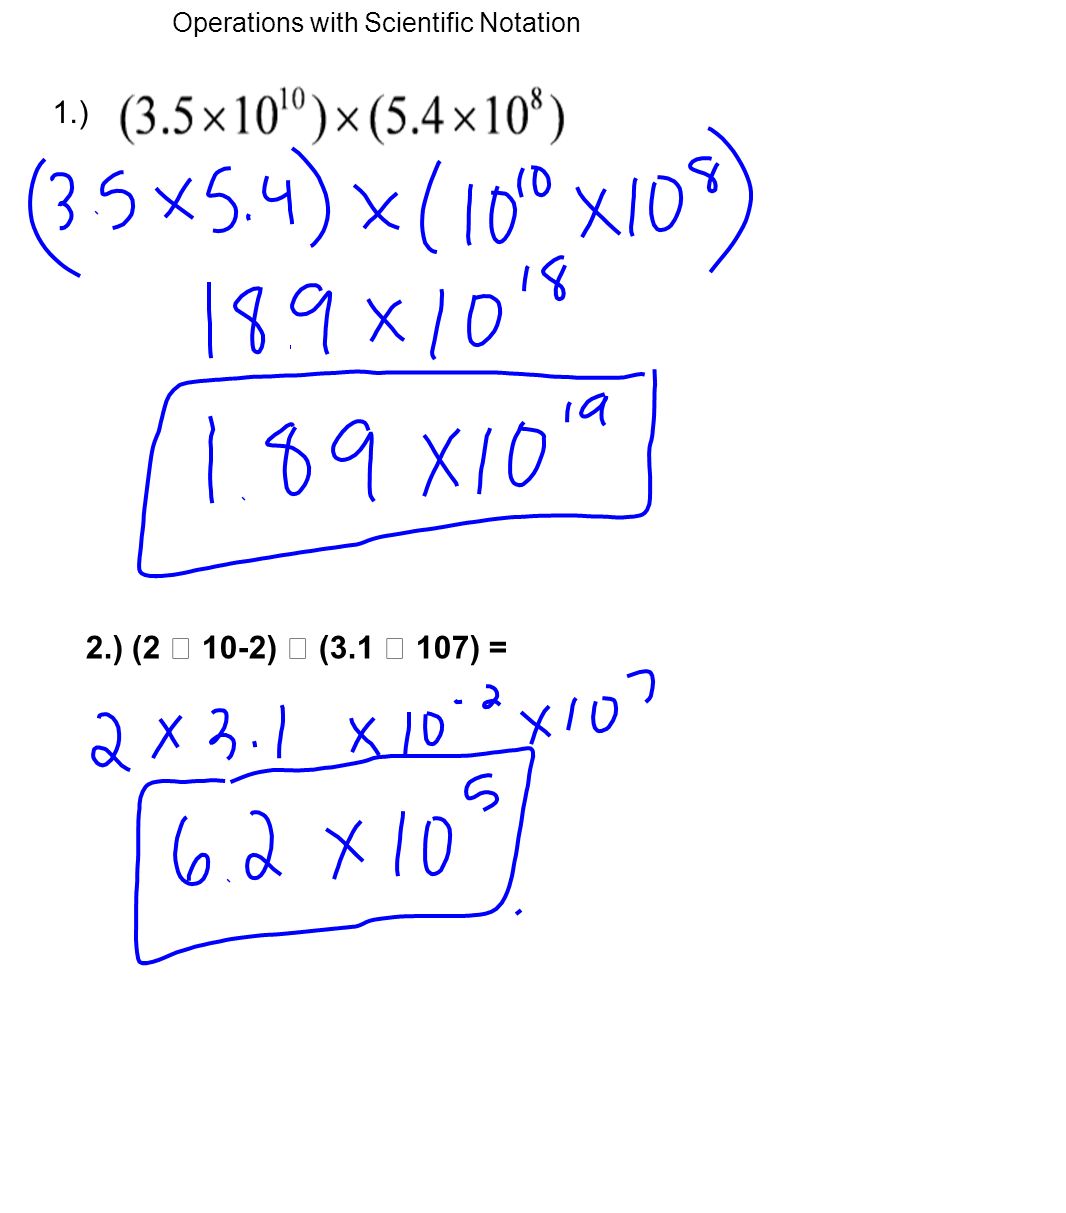 1.) 2.) (2  10-2)  (3.1  107) =